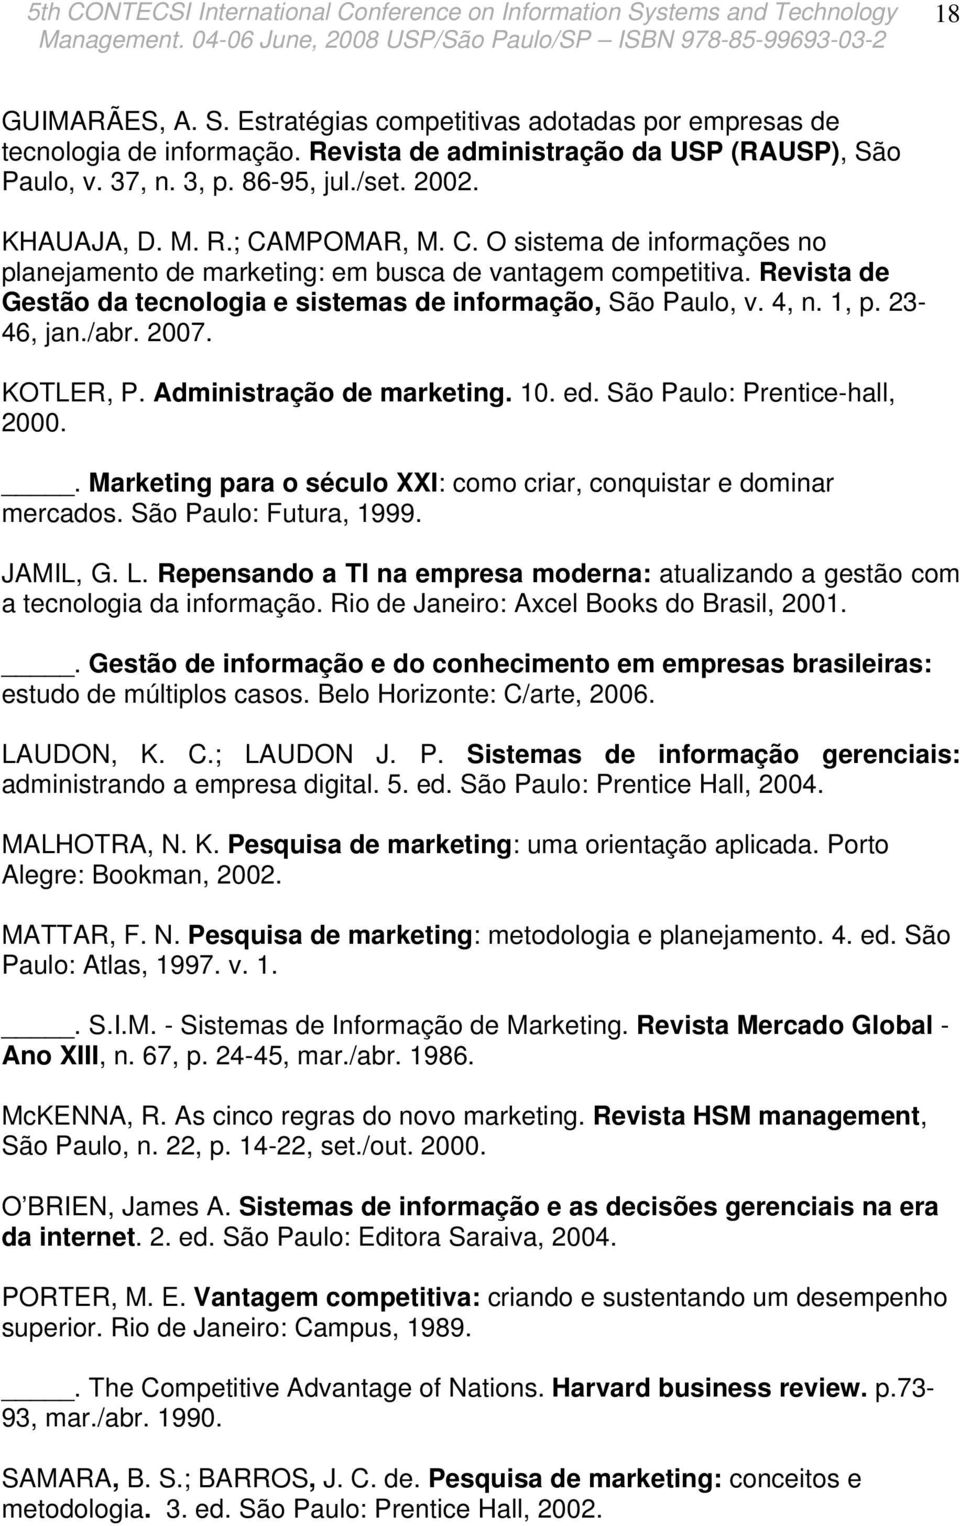 23-46, jan./abr. 2007. KOTLER, P. Administração de marketing. 10. ed. São Paulo: Prentice-hall, 2000.. Marketing para o século XXI: como criar, conquistar e dominar mercados. São Paulo: Futura, 1999.